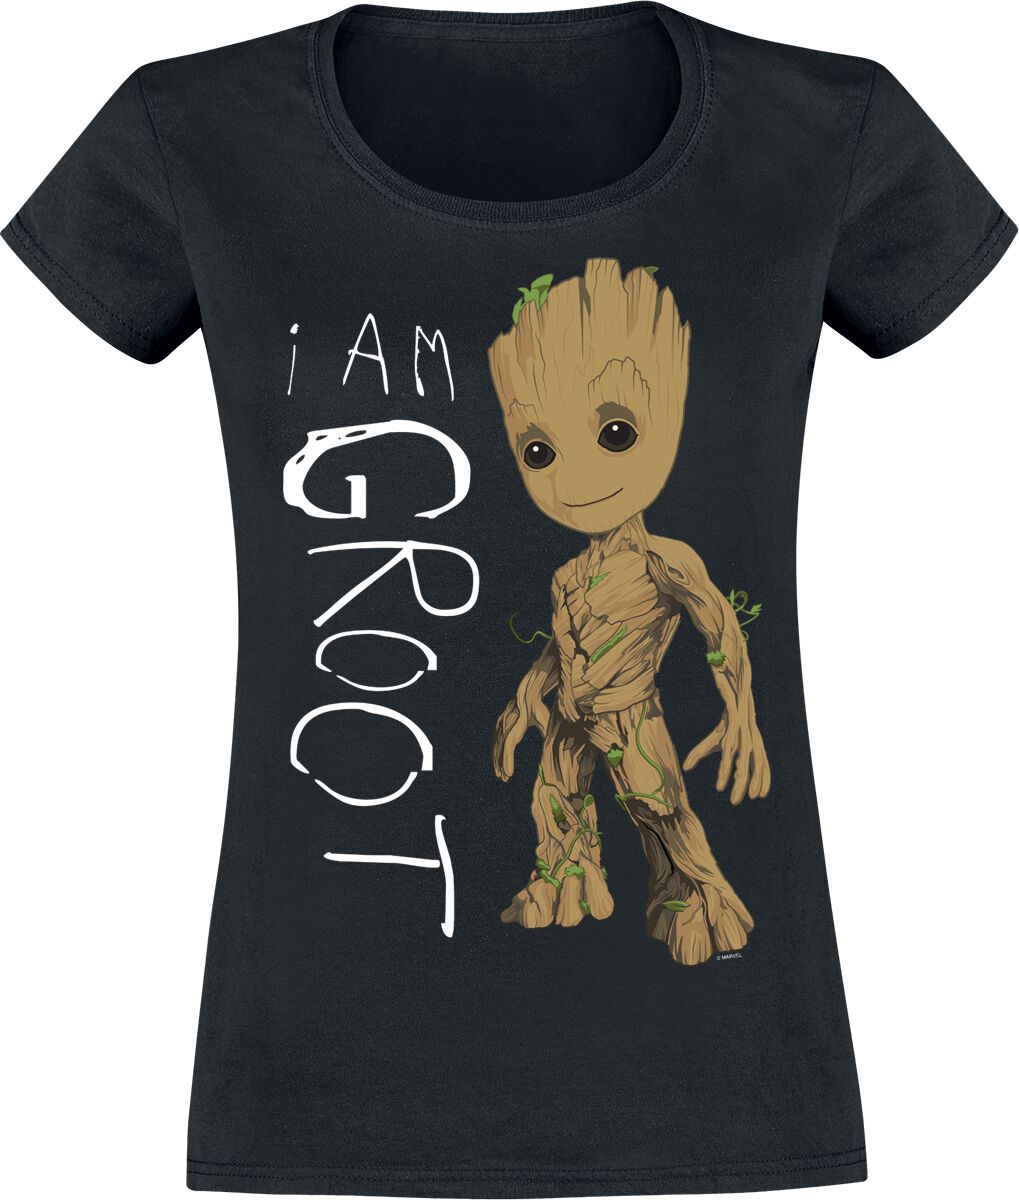 T-Shirt Manches courtes de Les Gardiens De La Galaxie - I Am Groot - S à XXL - pour Femme - noir